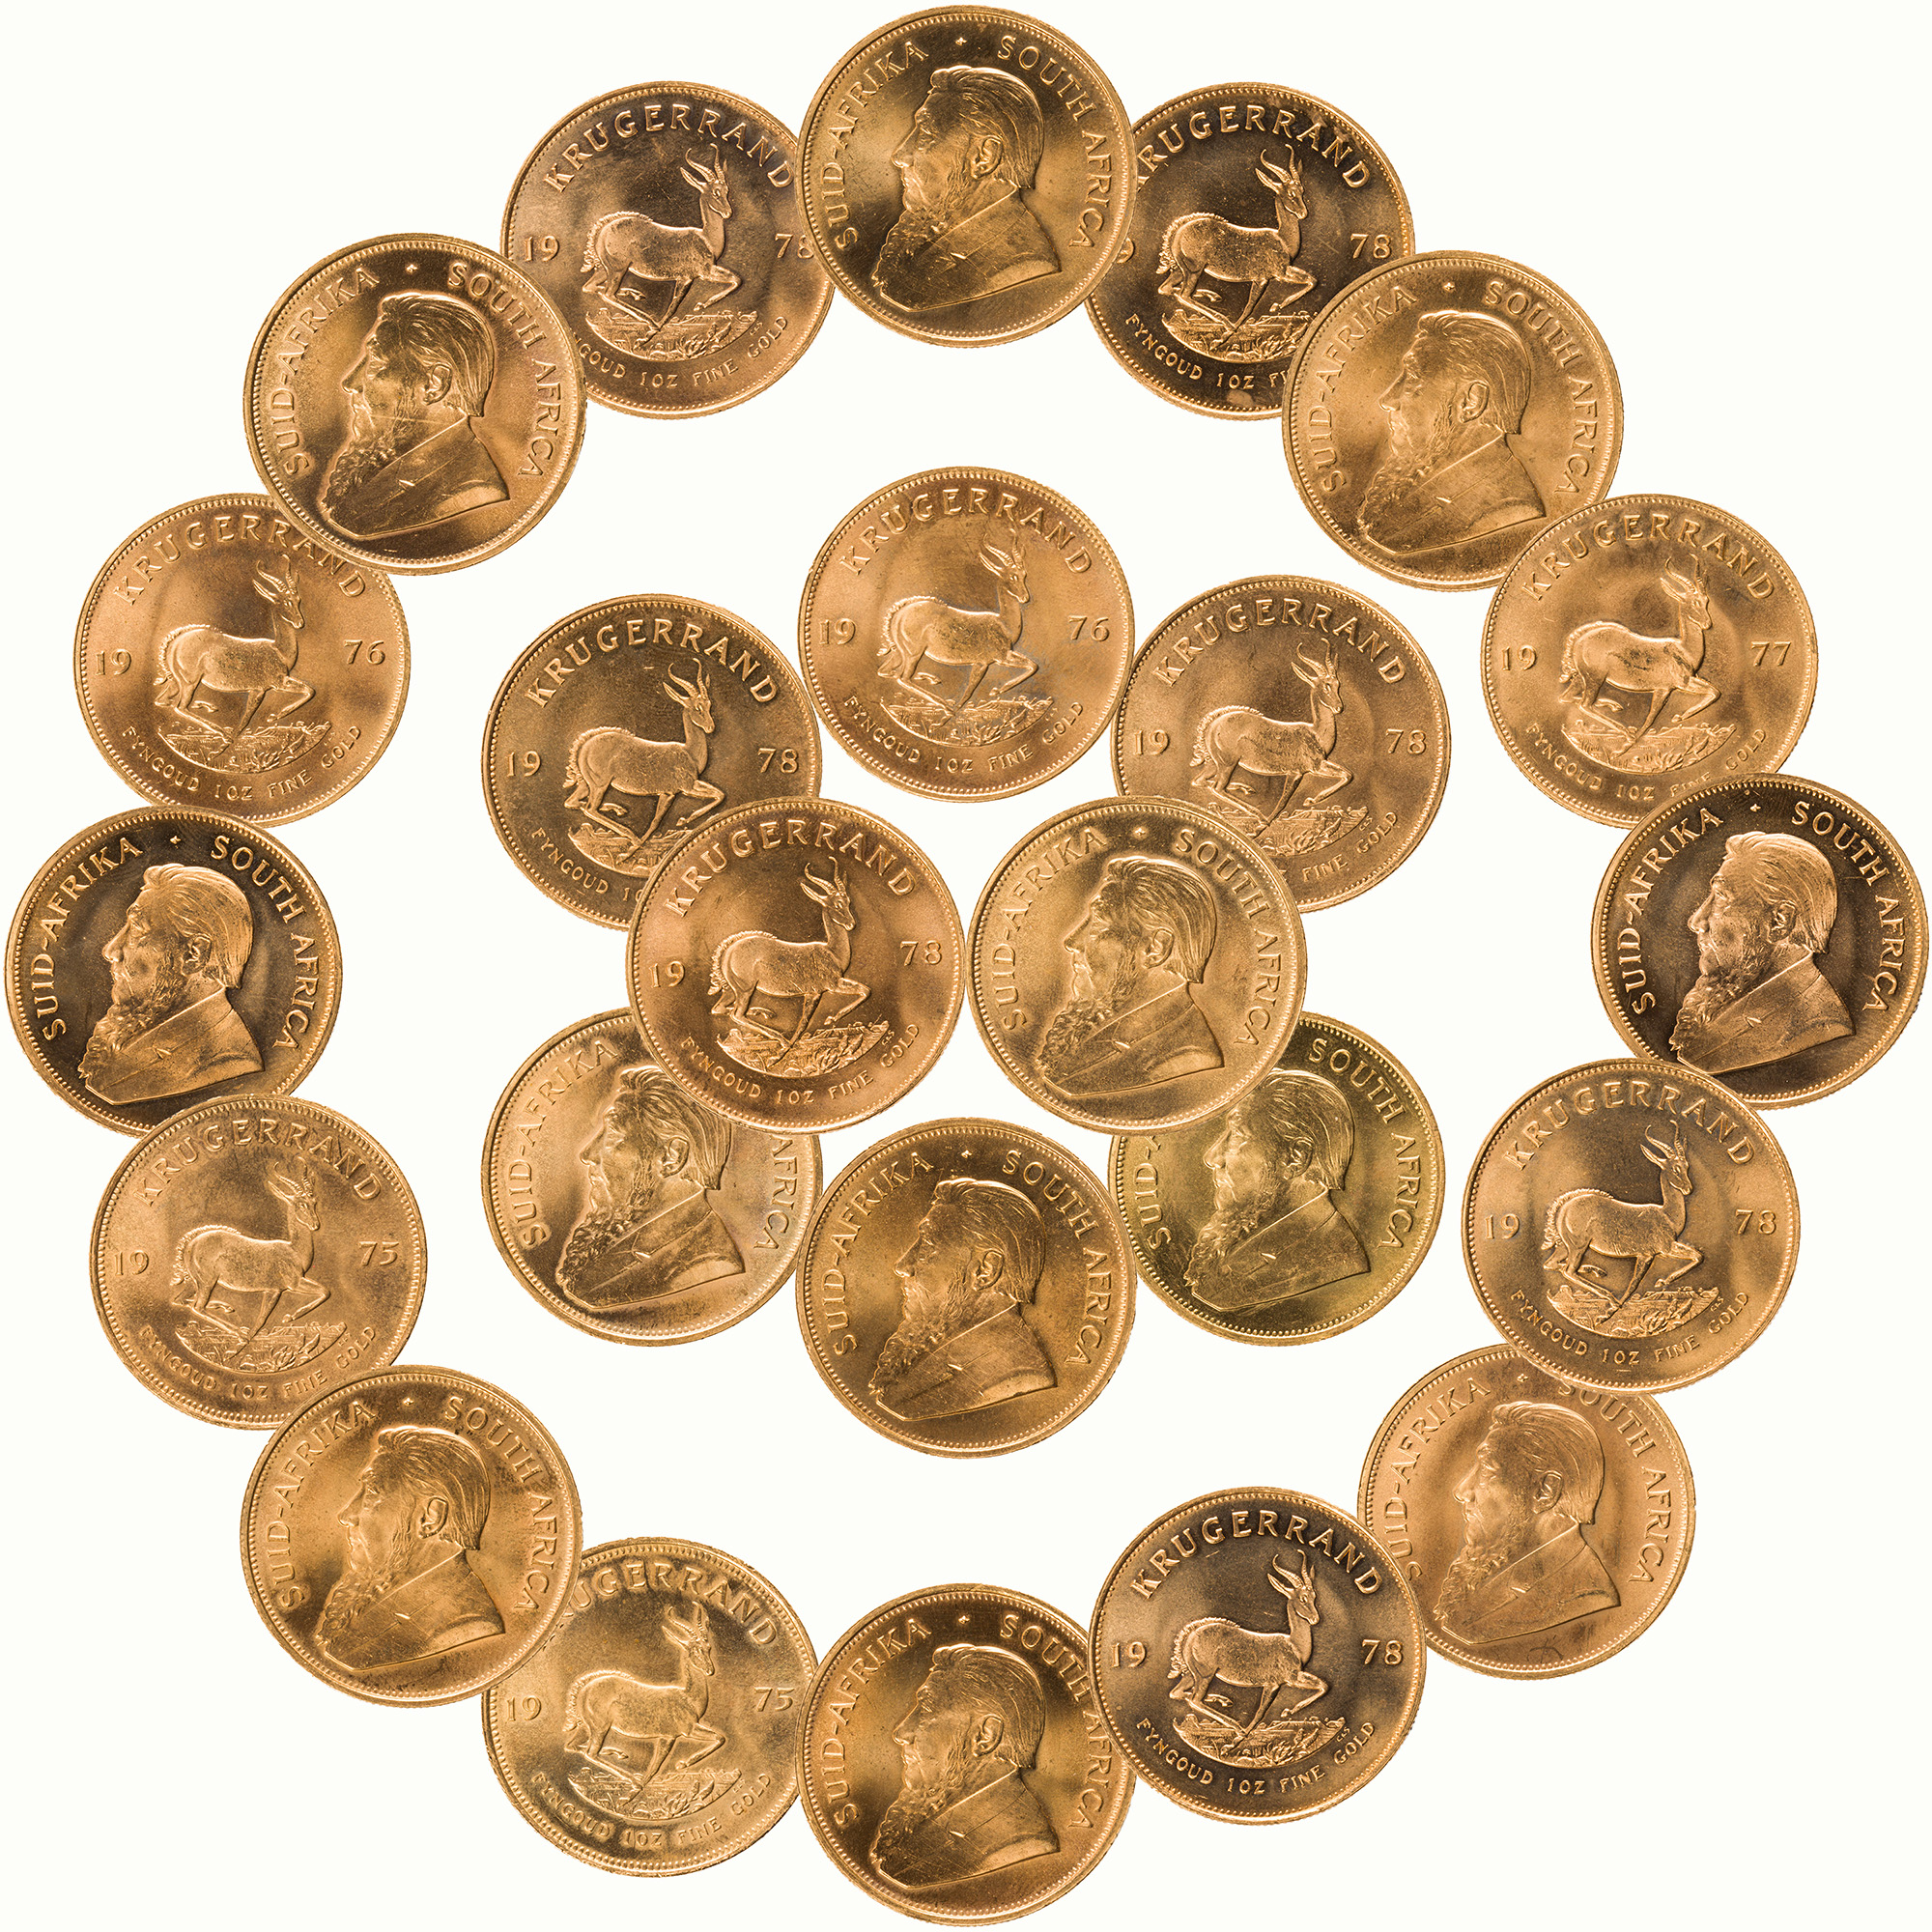 Collection of gold Krugerrands